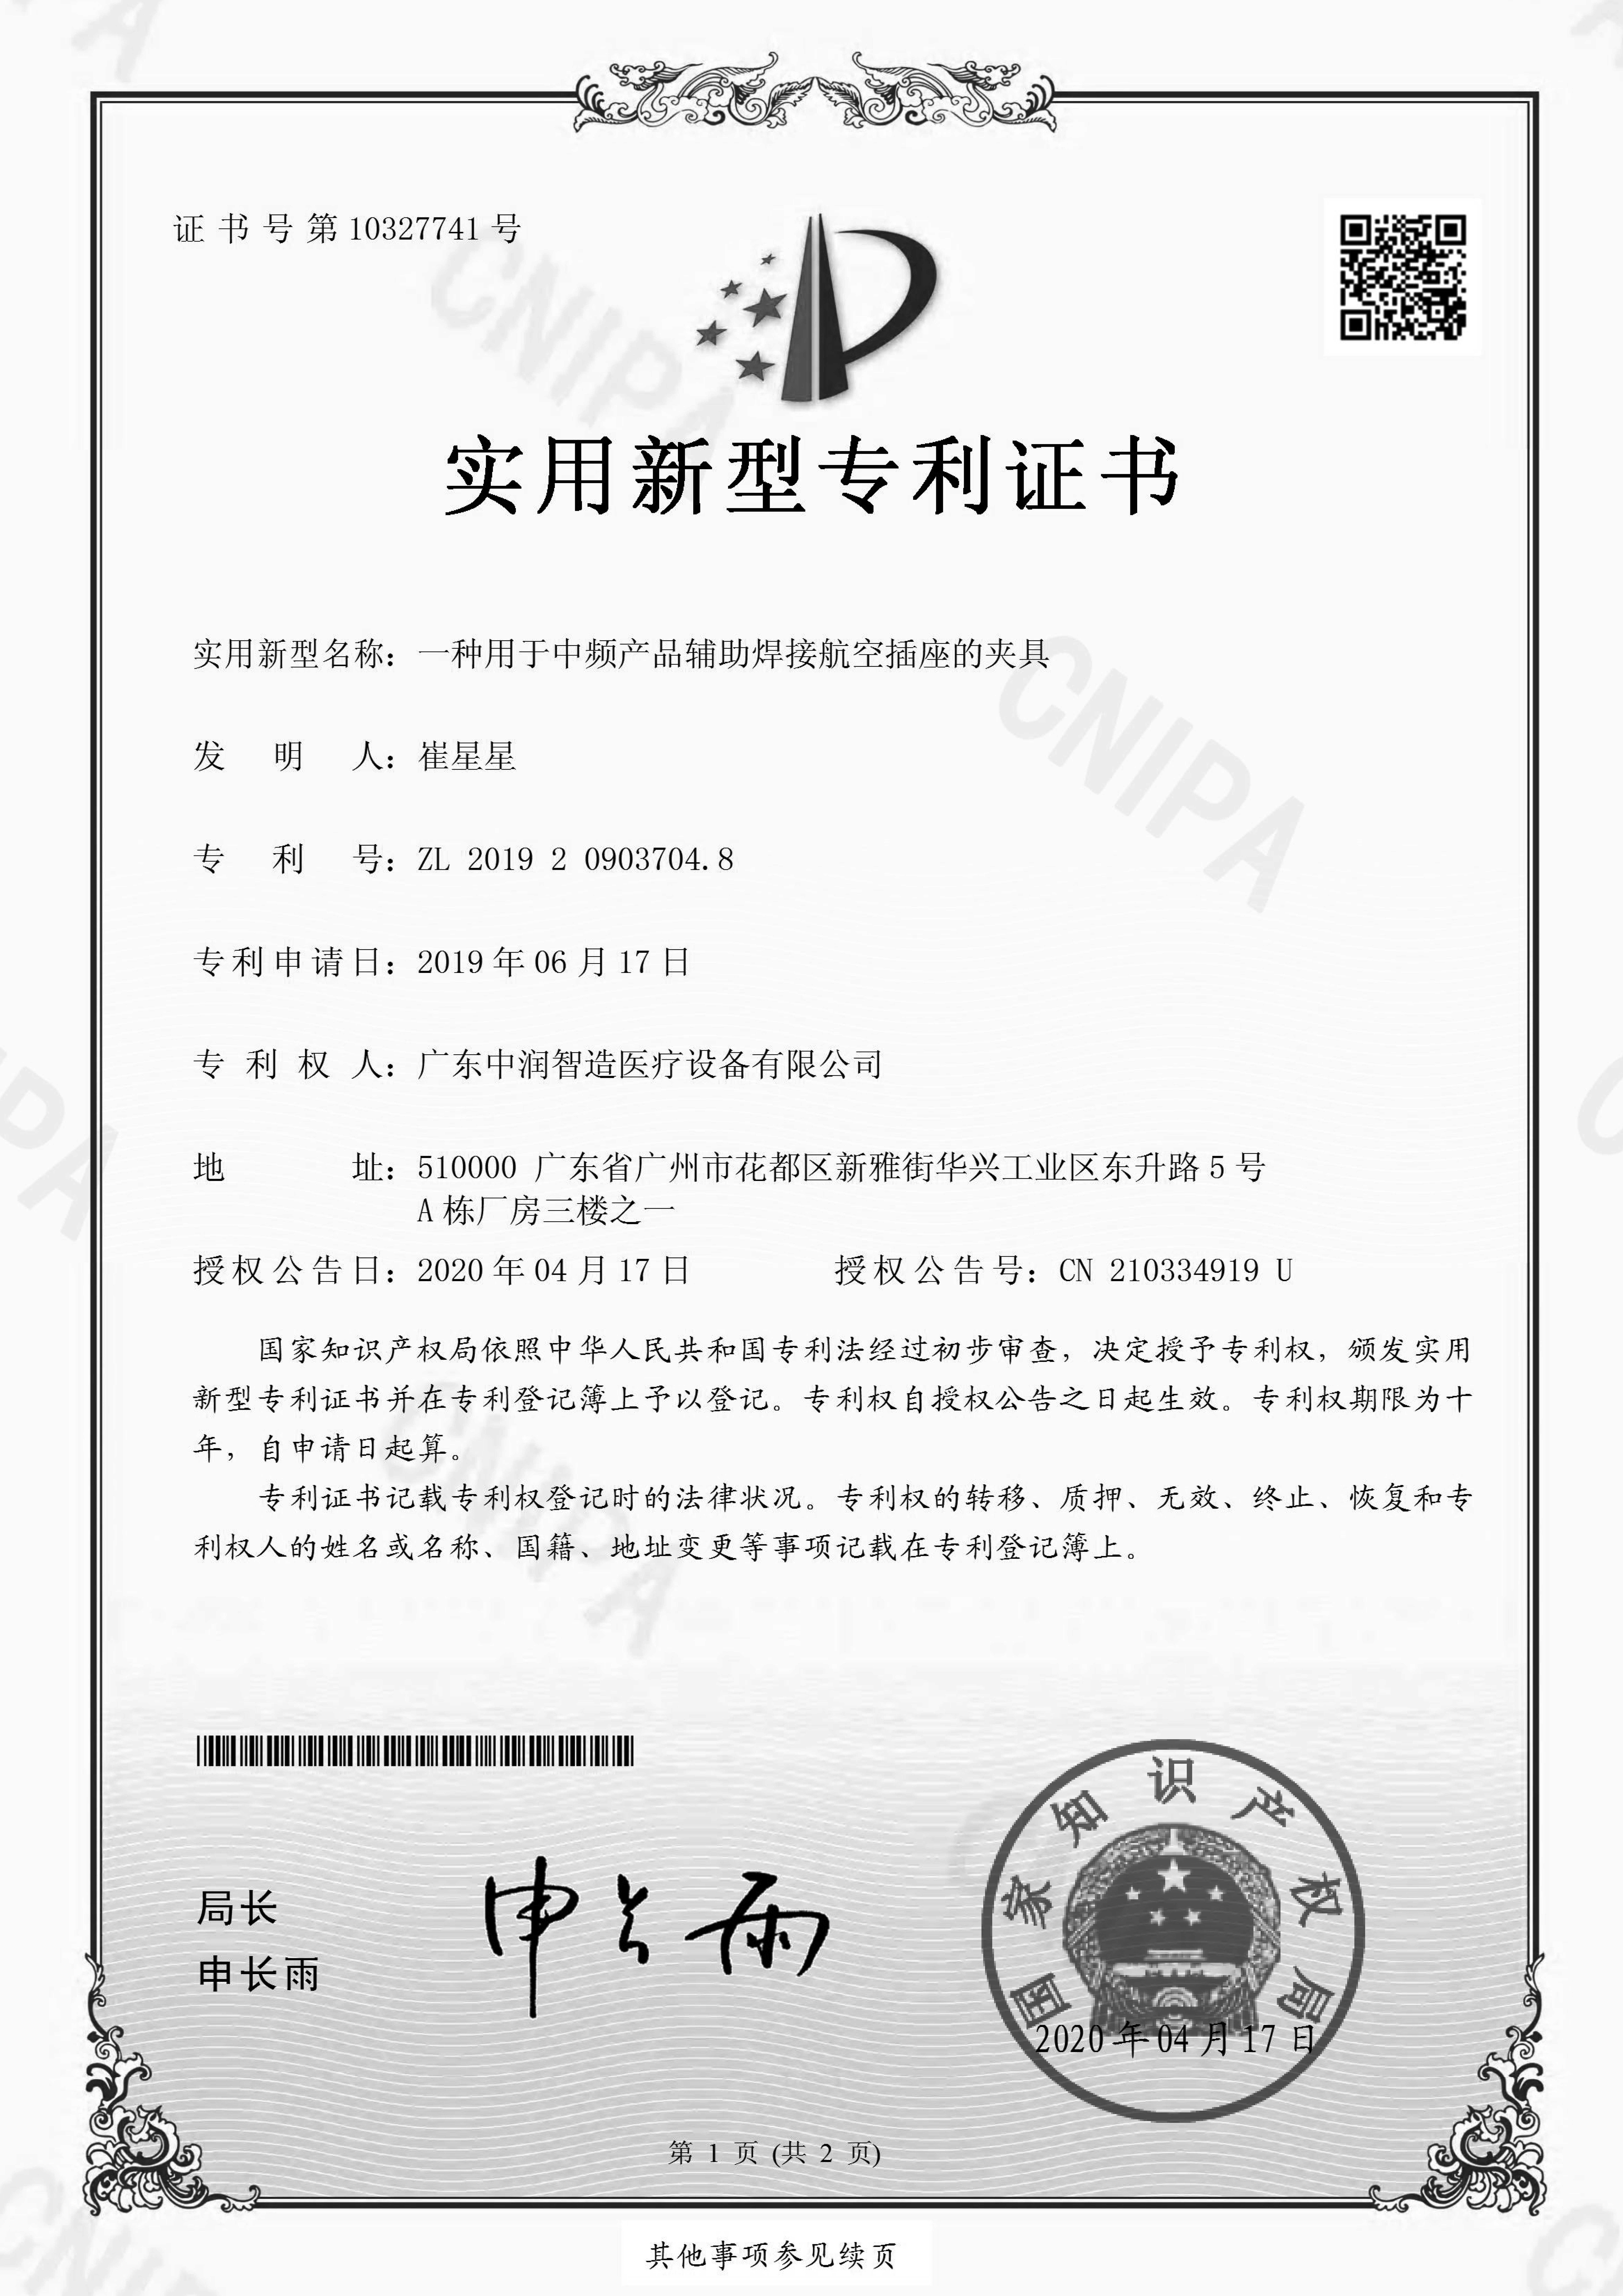 实用新型专利证书-电子版-第“201920903704.8”号-广东中润智造医疗设备有限公司_看图王-1